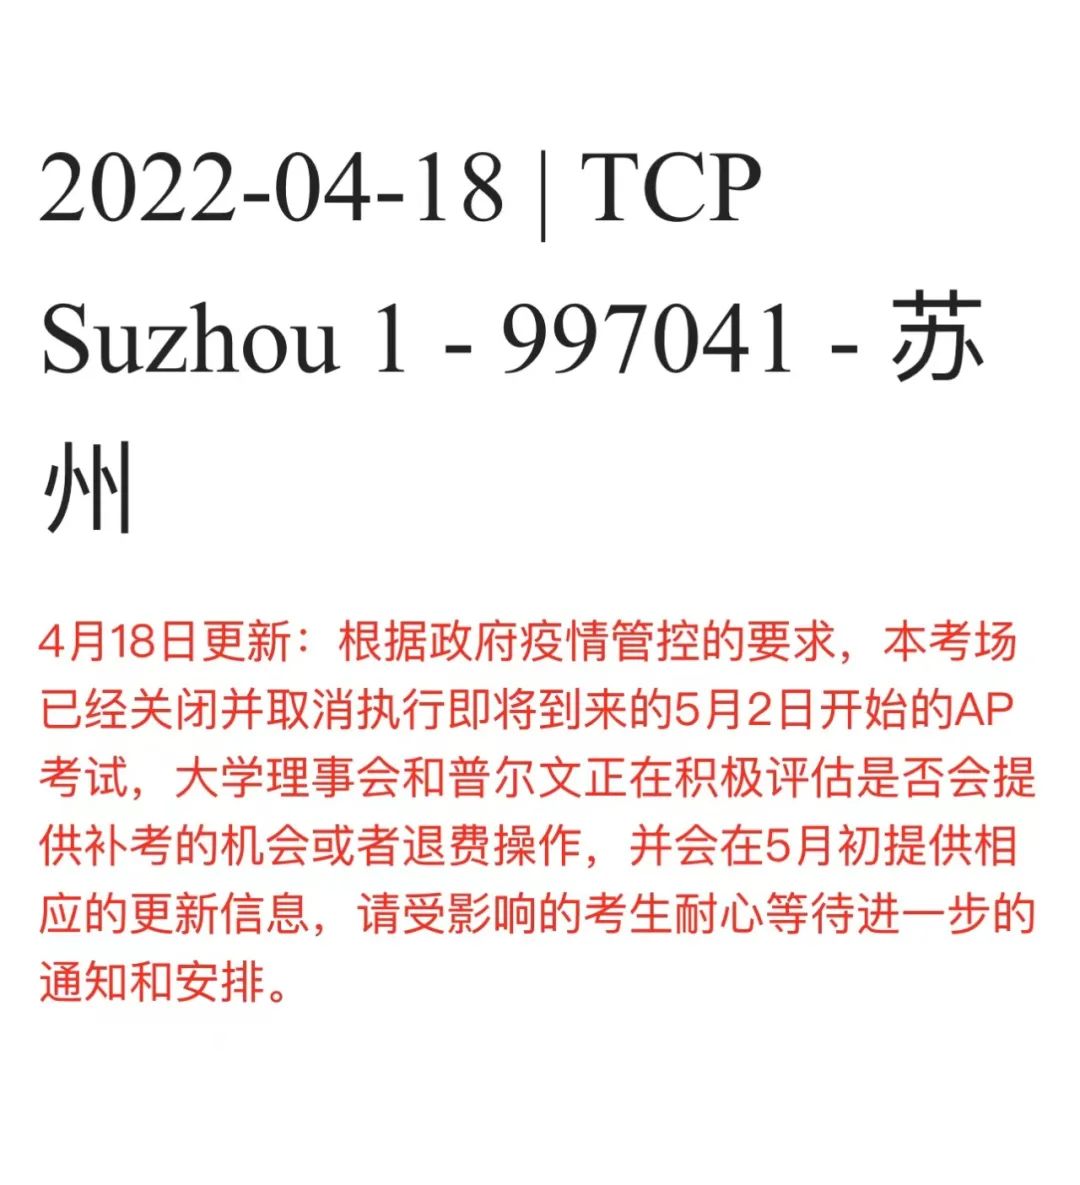 最新! 正如预料, 上海苏州地区AP考试全部取消, 全国各地升级入场防控要求!